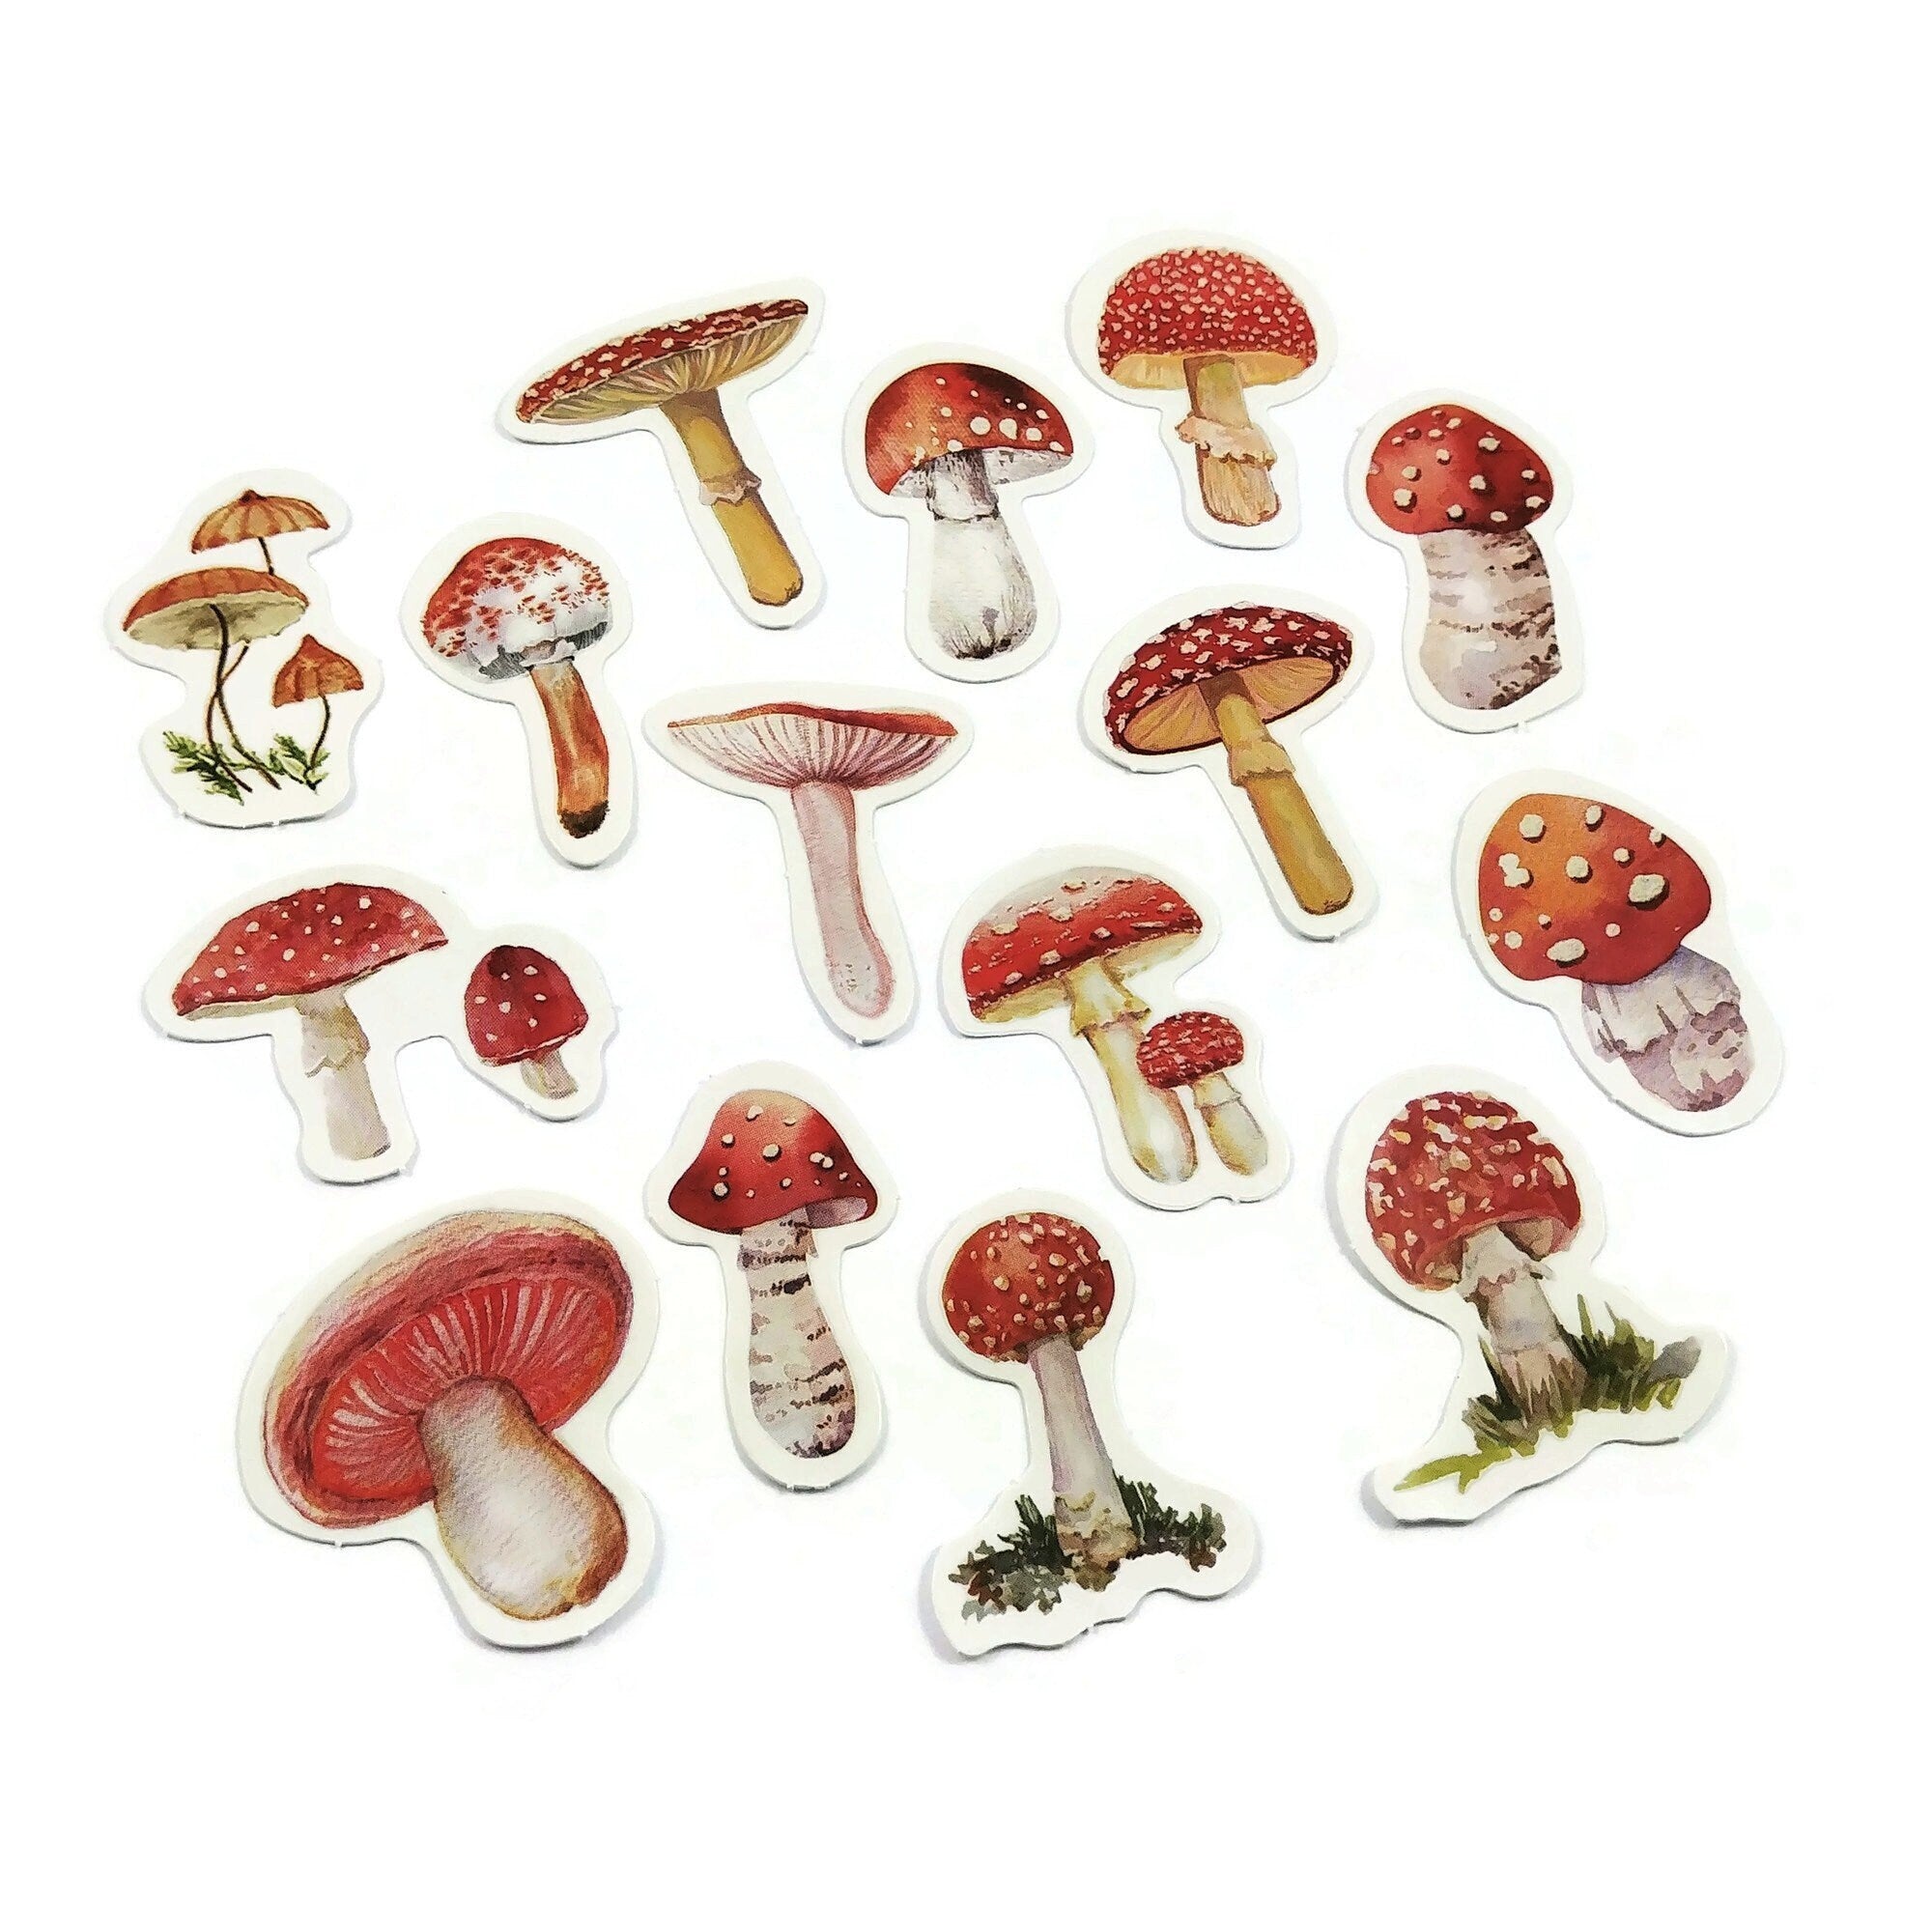 AUTOCOLLANT MAT : Autocollant esthétique de plancher de forêt de champignon  rouge, autocollant de champignon rouge, autocollant de champignon de forêt  rouge, autocollants de champignon -  Canada